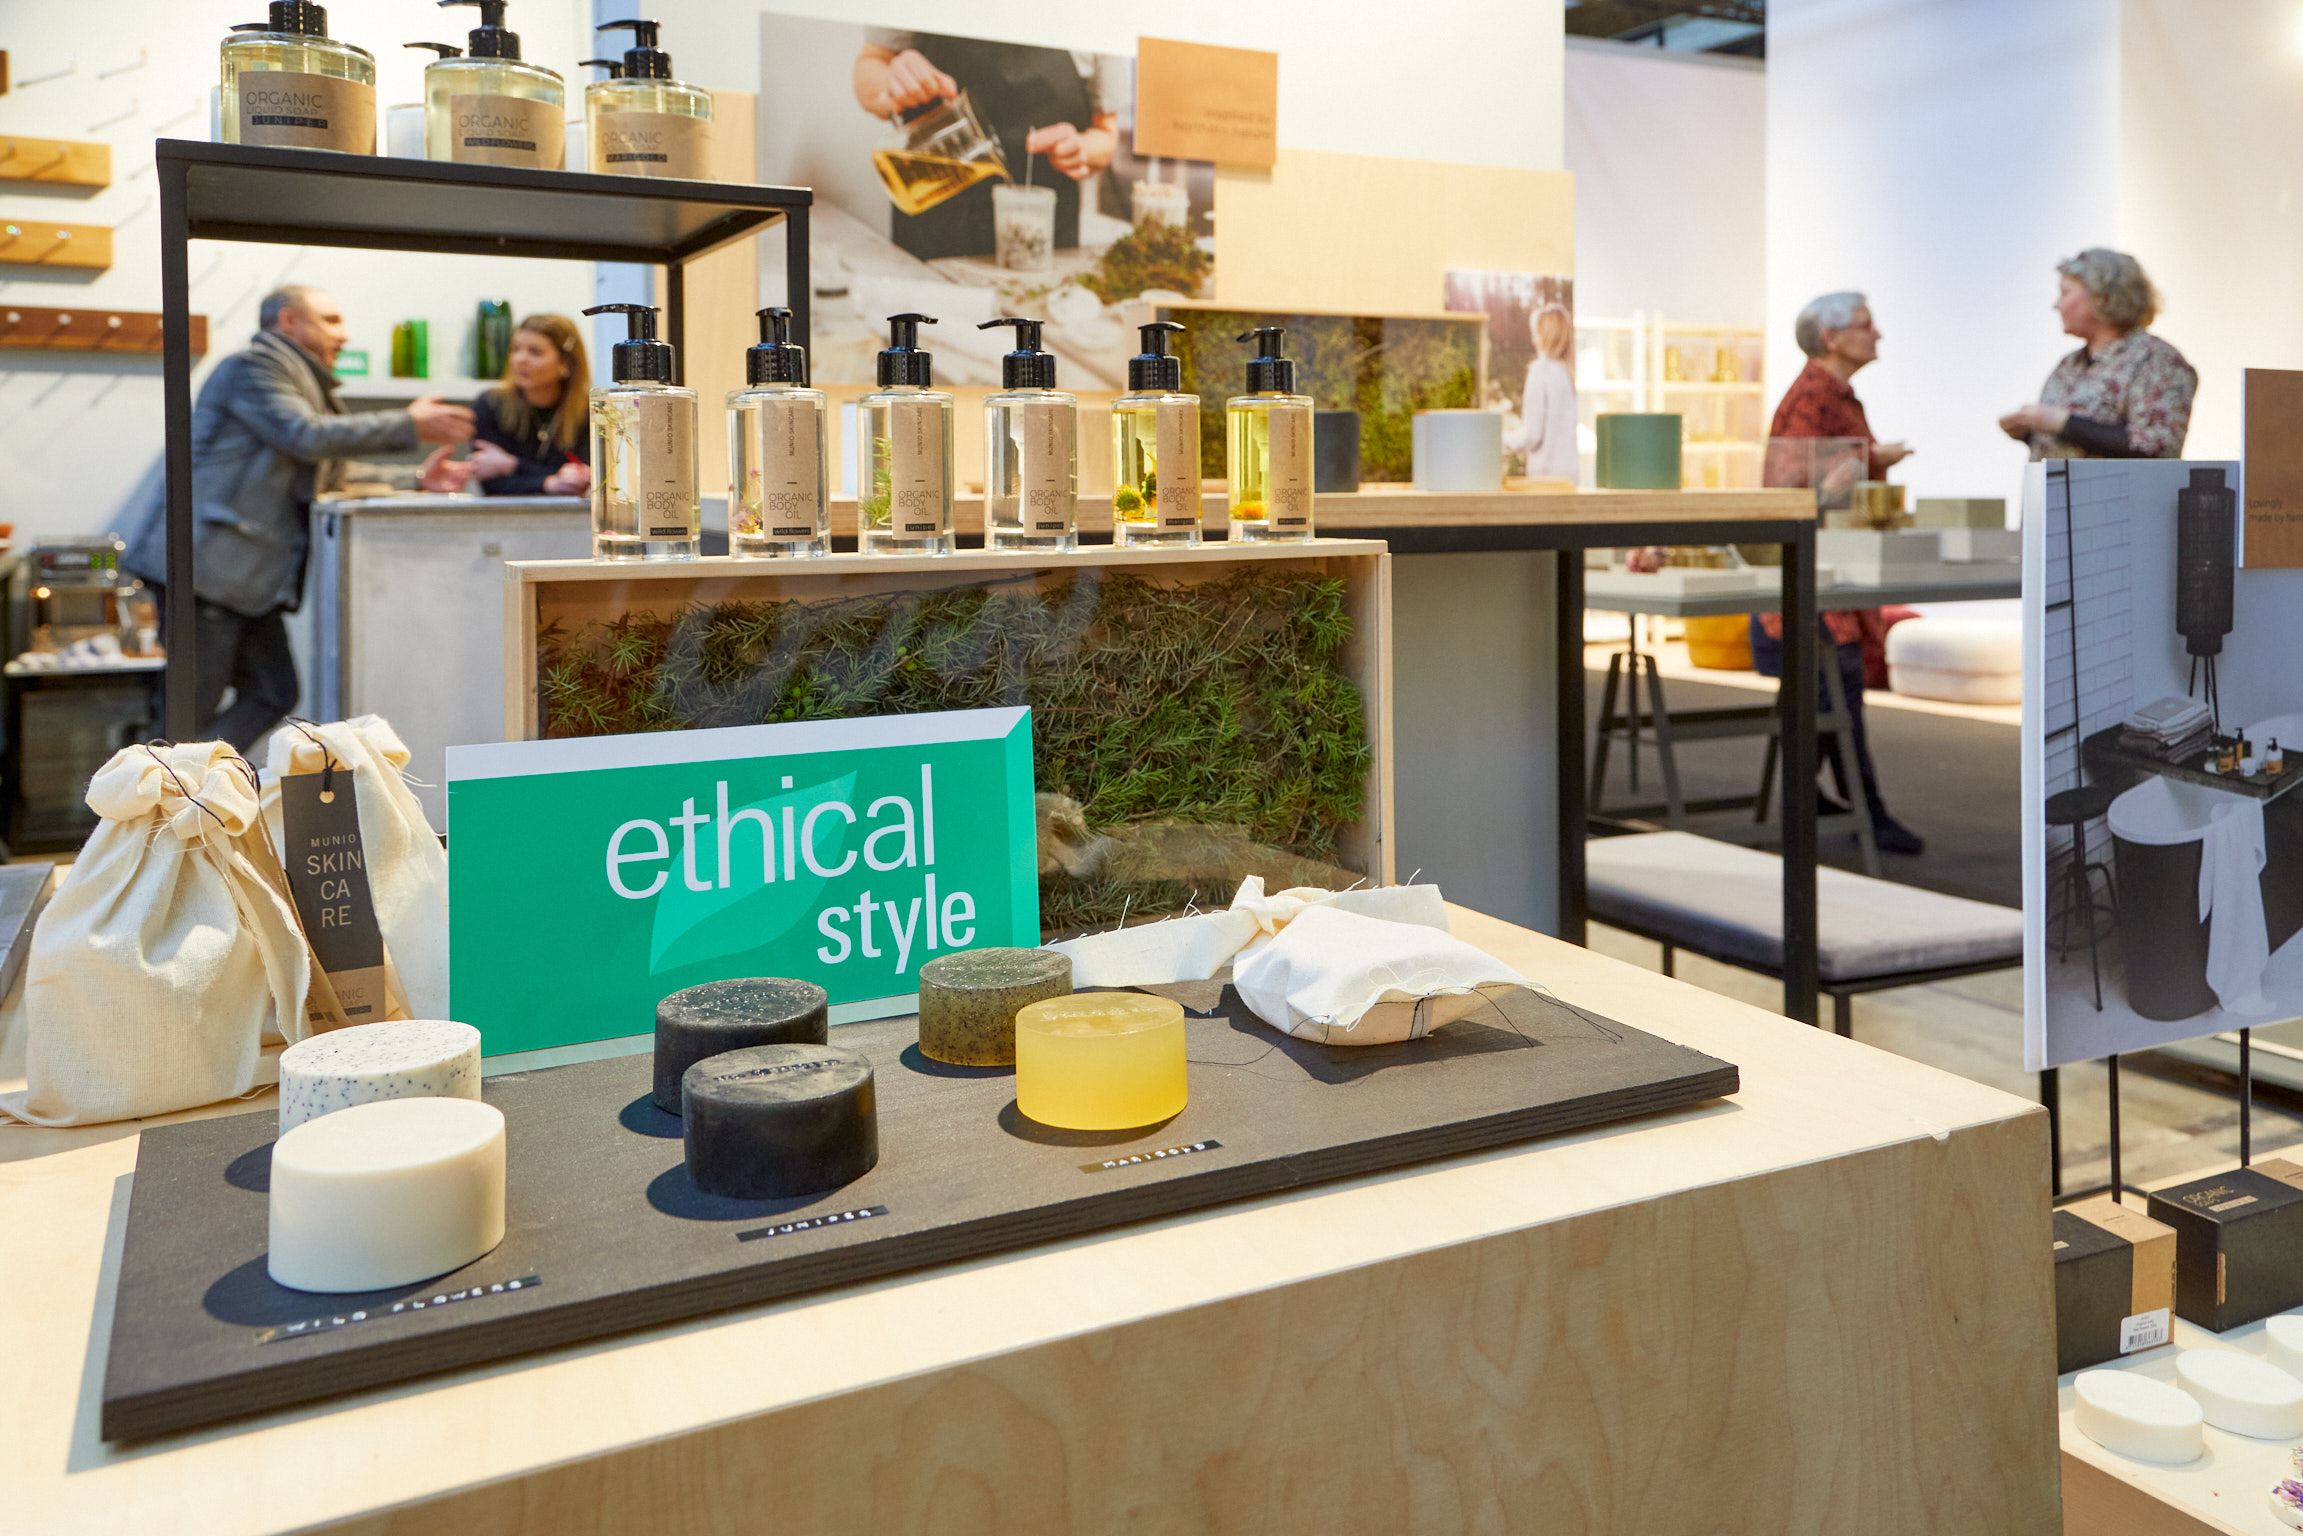 Die Bezeichnung Ethical Style macht auf nachhaltige Produkte aufmerksam.